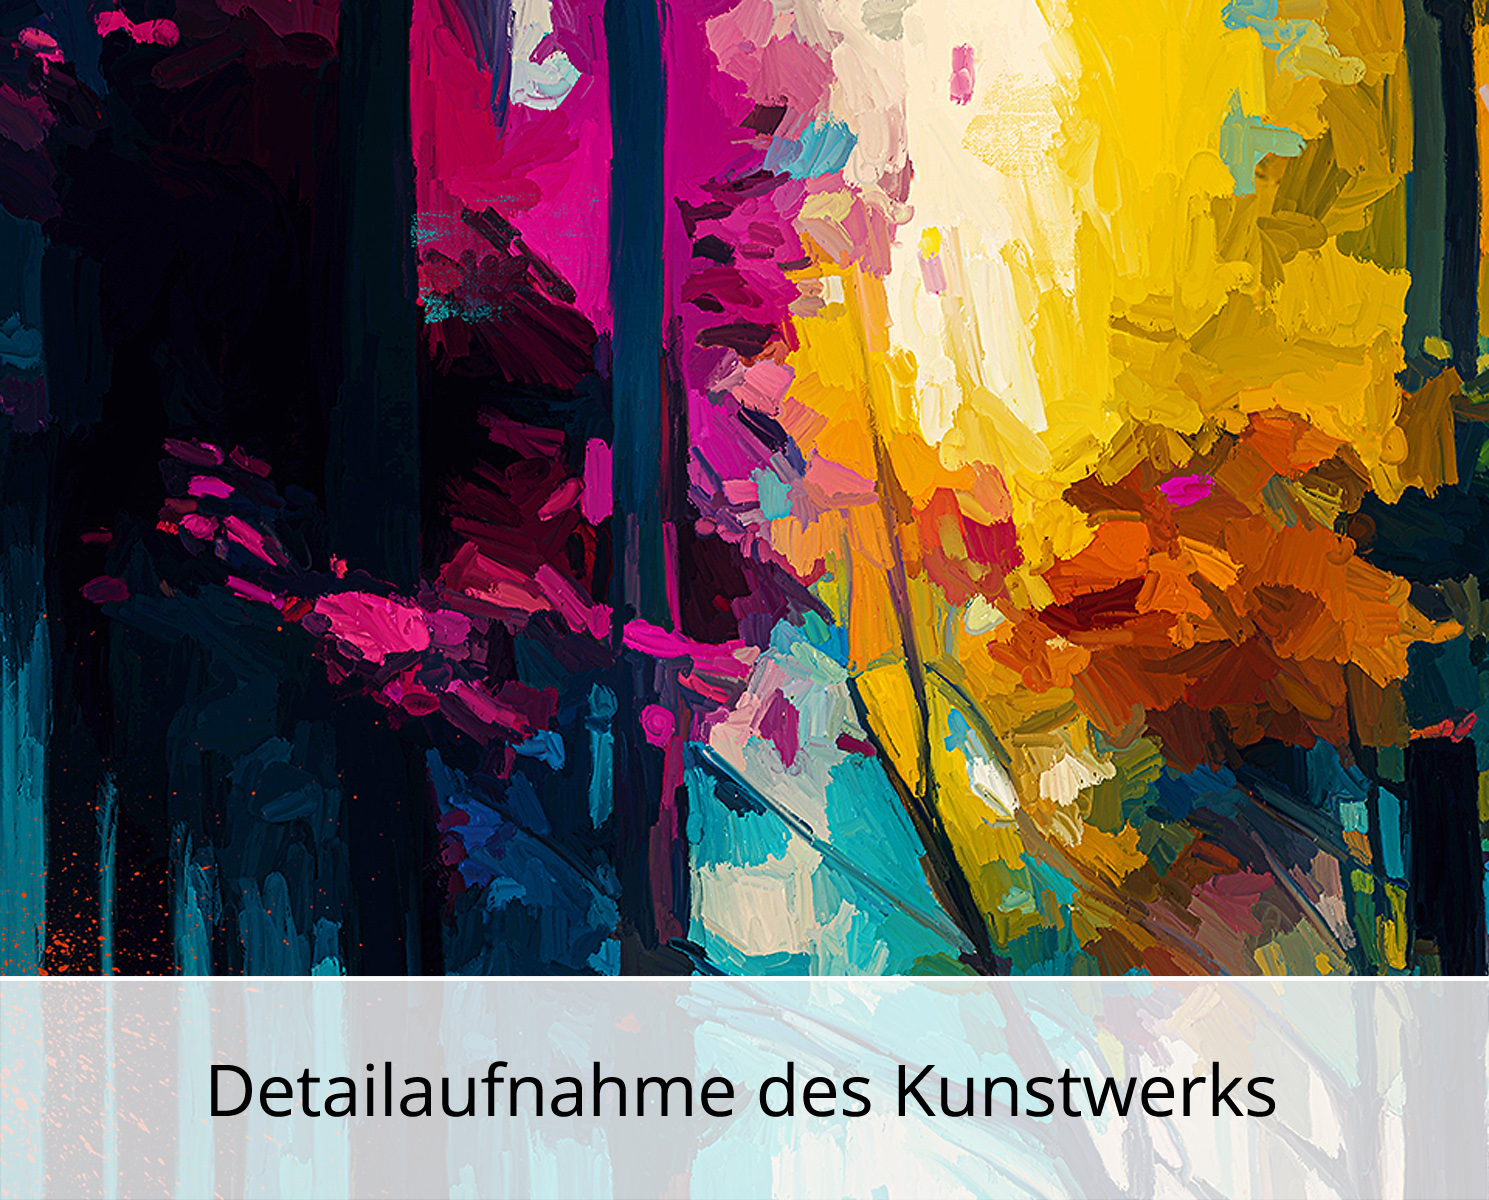 Moderne Pop Art: Herbstwald, H. Mühlbauer-Gardemin, Original/serielles Unikat